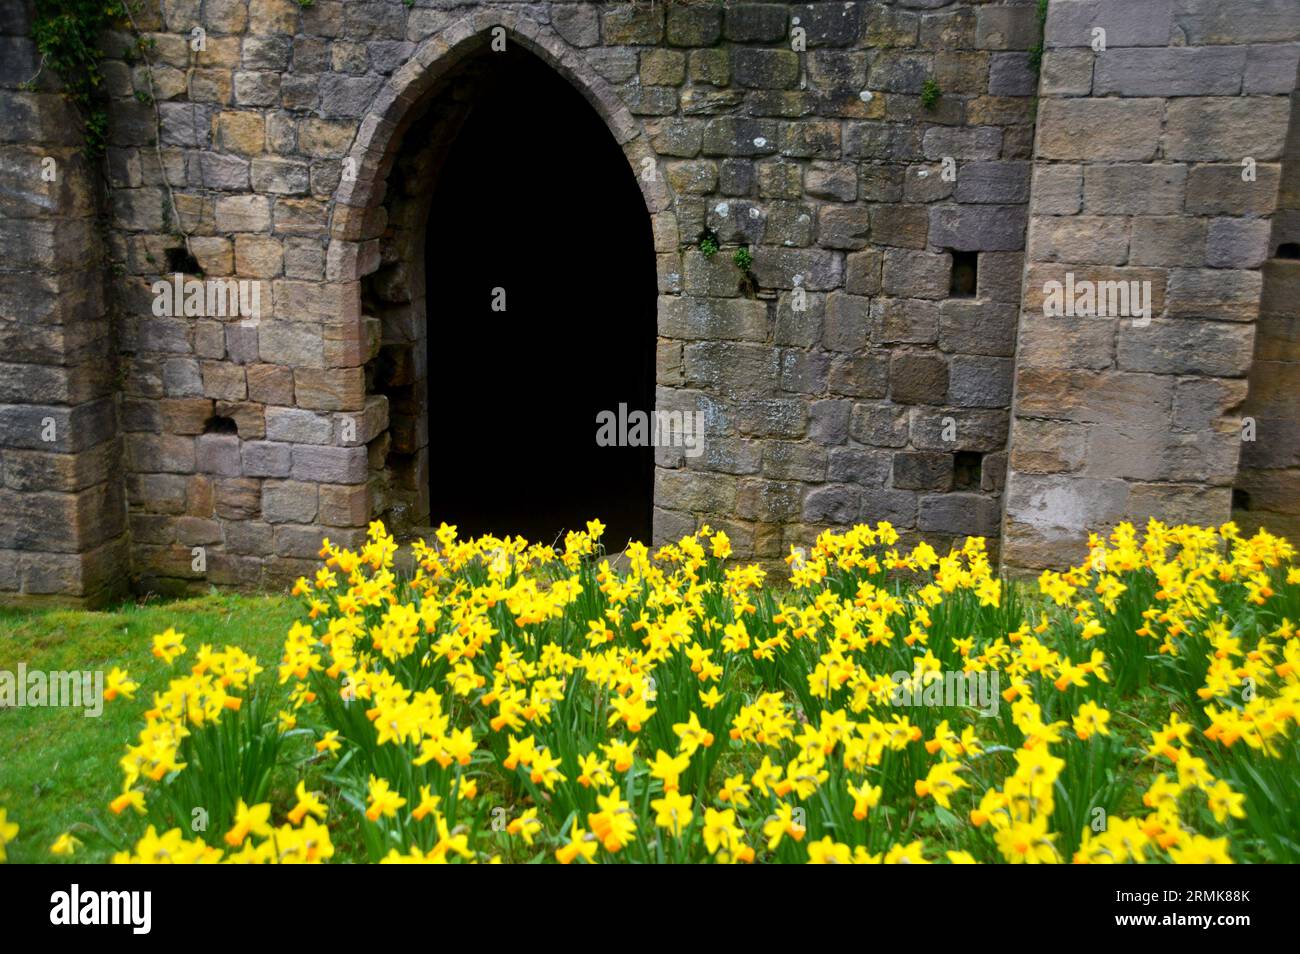 Narcisi primaverili accanto a una porta ad arco in pietra nelle rovine dell'abbazia di Fountains, il monastero cistercense medievale nel North Yorkshire, Inghilterra, Regno Unito. Foto Stock